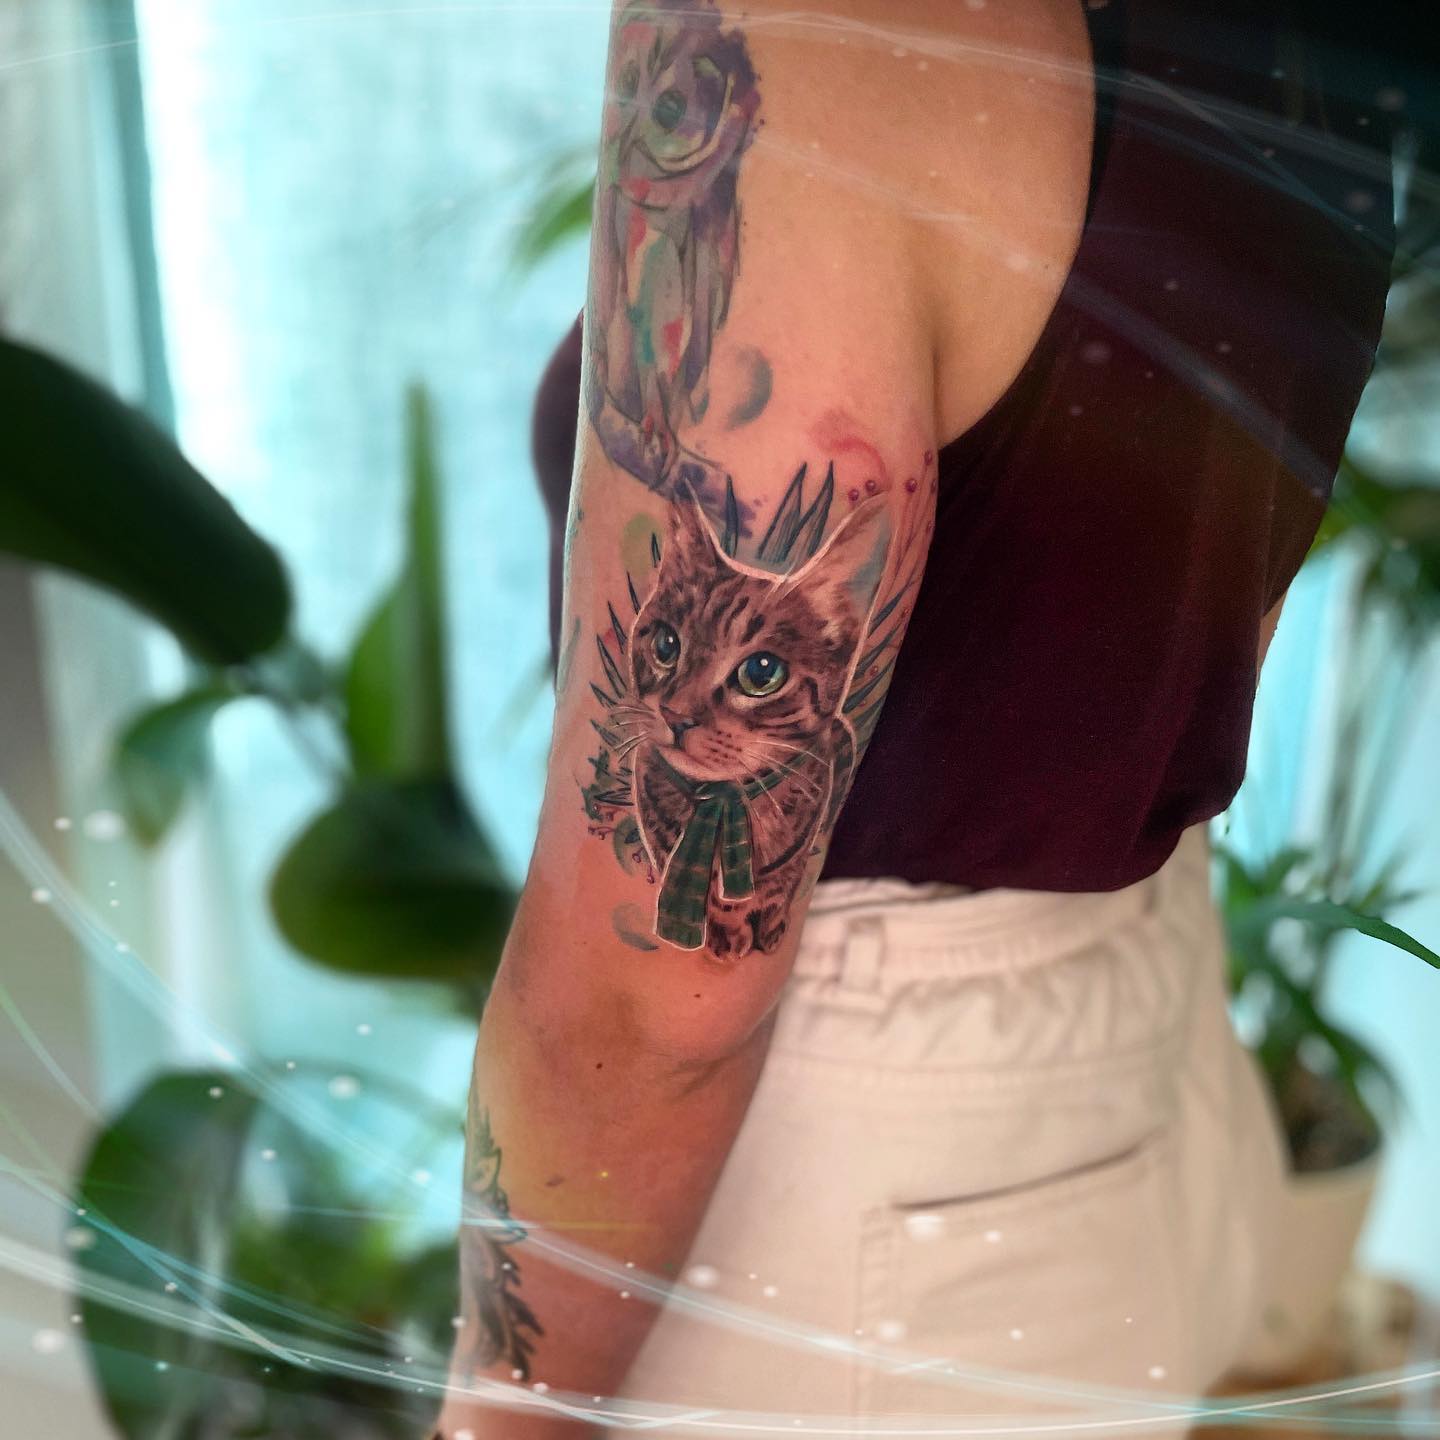 Tatuajes en el brazo de mujer: Diseños increíblemente feméninos